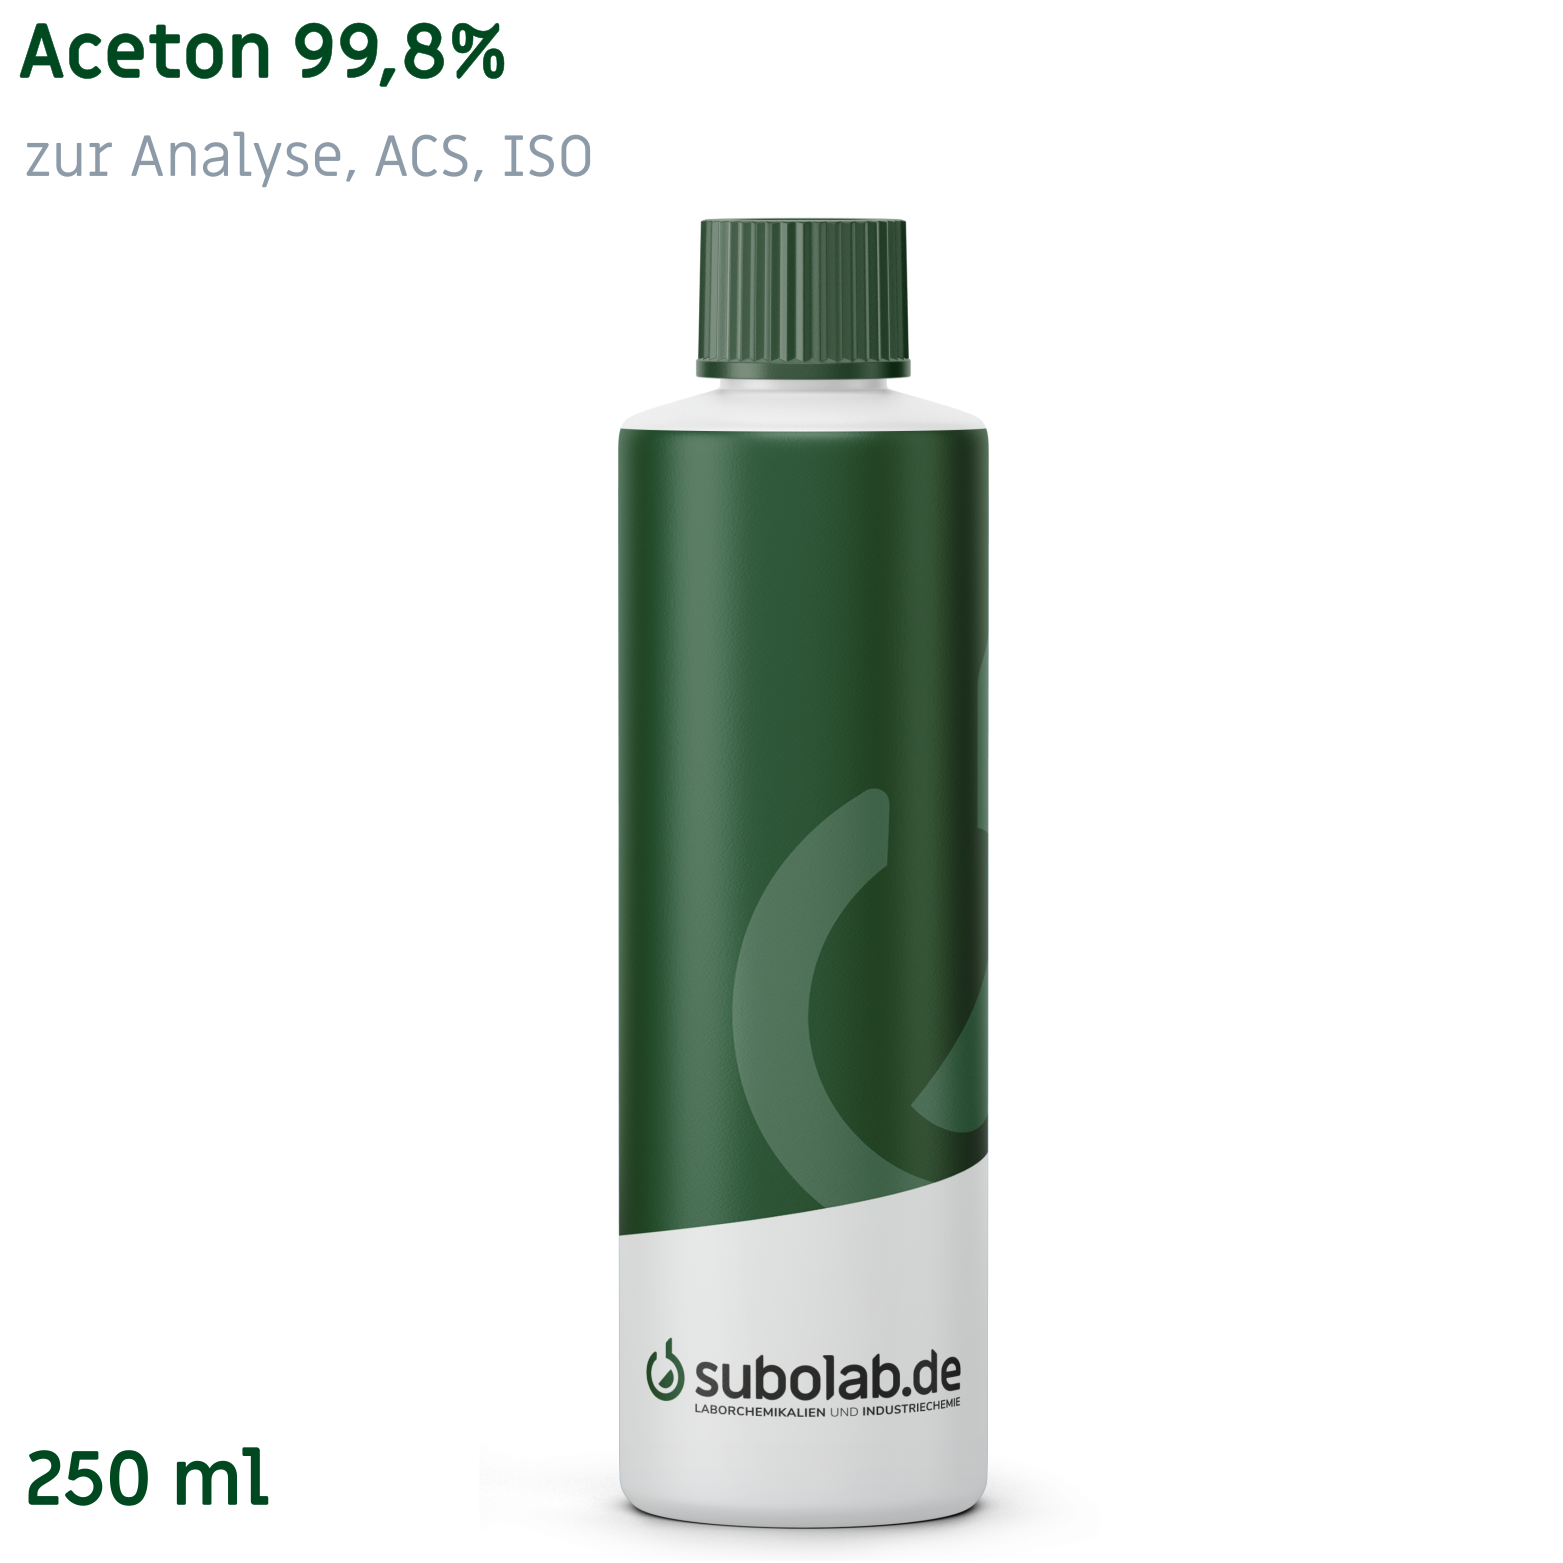 Bild von Aceton 99,8% zur Analyse, ACS, ISO (250 ml)